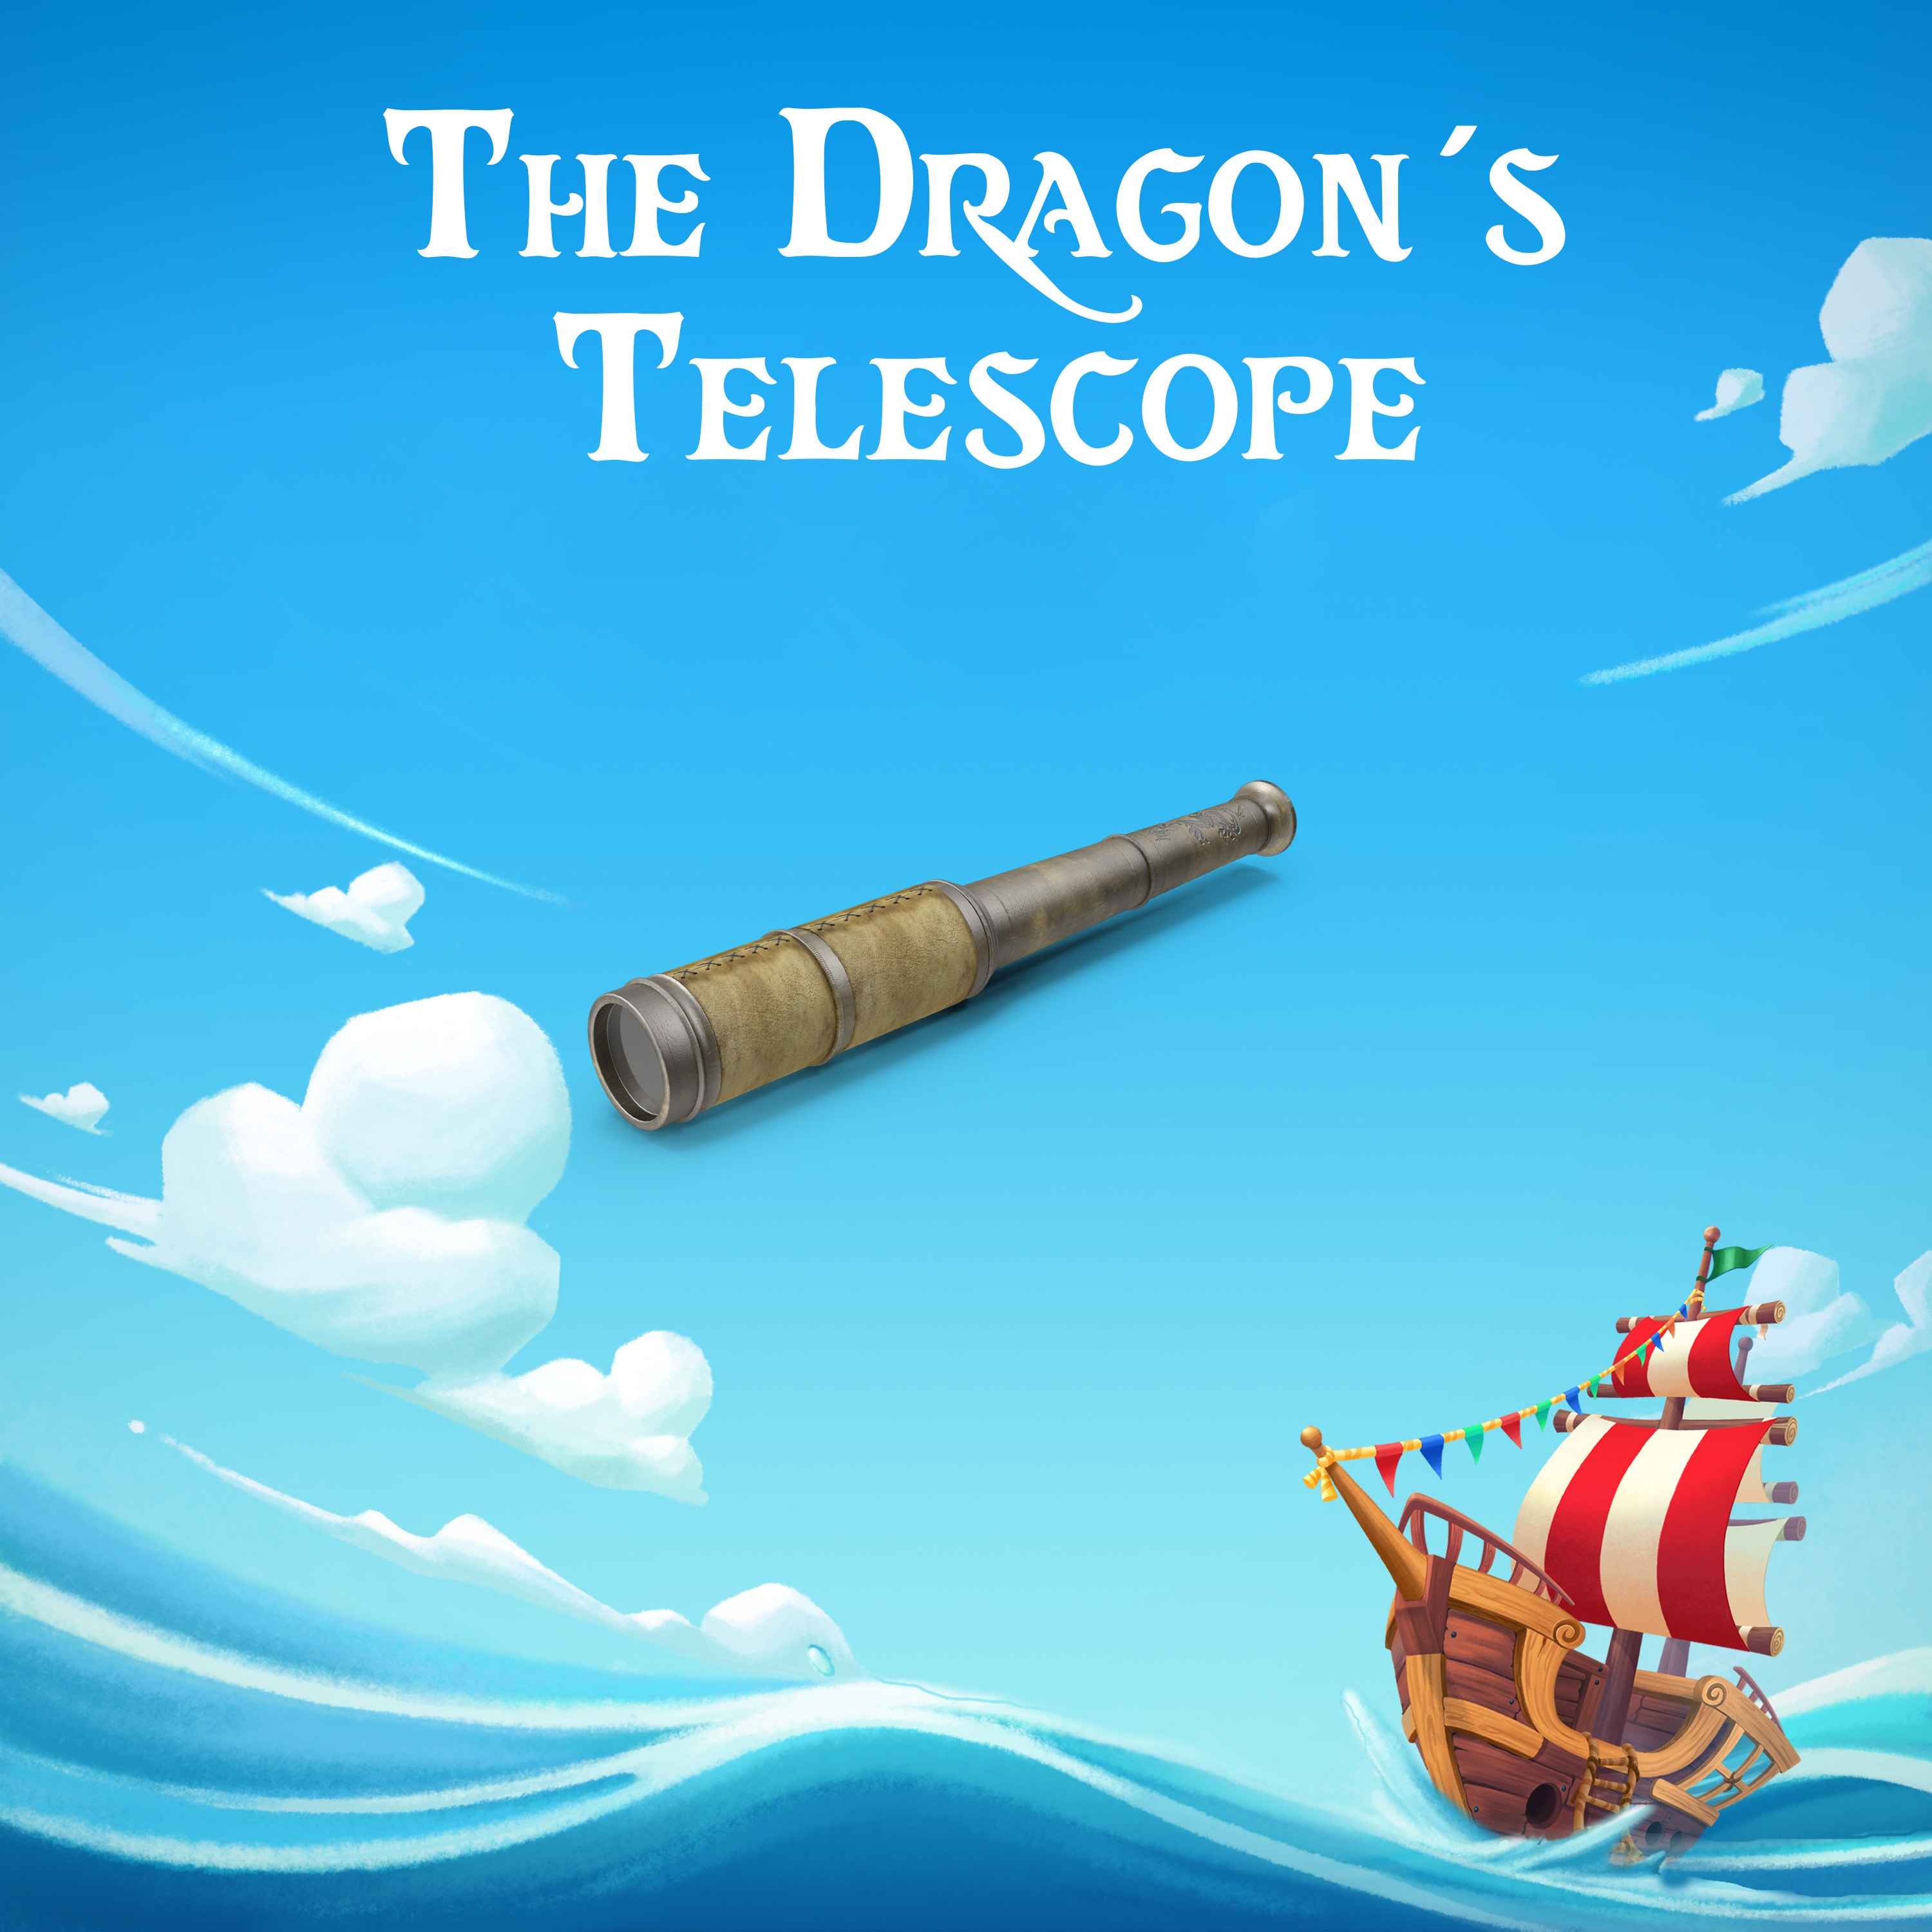 The Dragon's Telescope